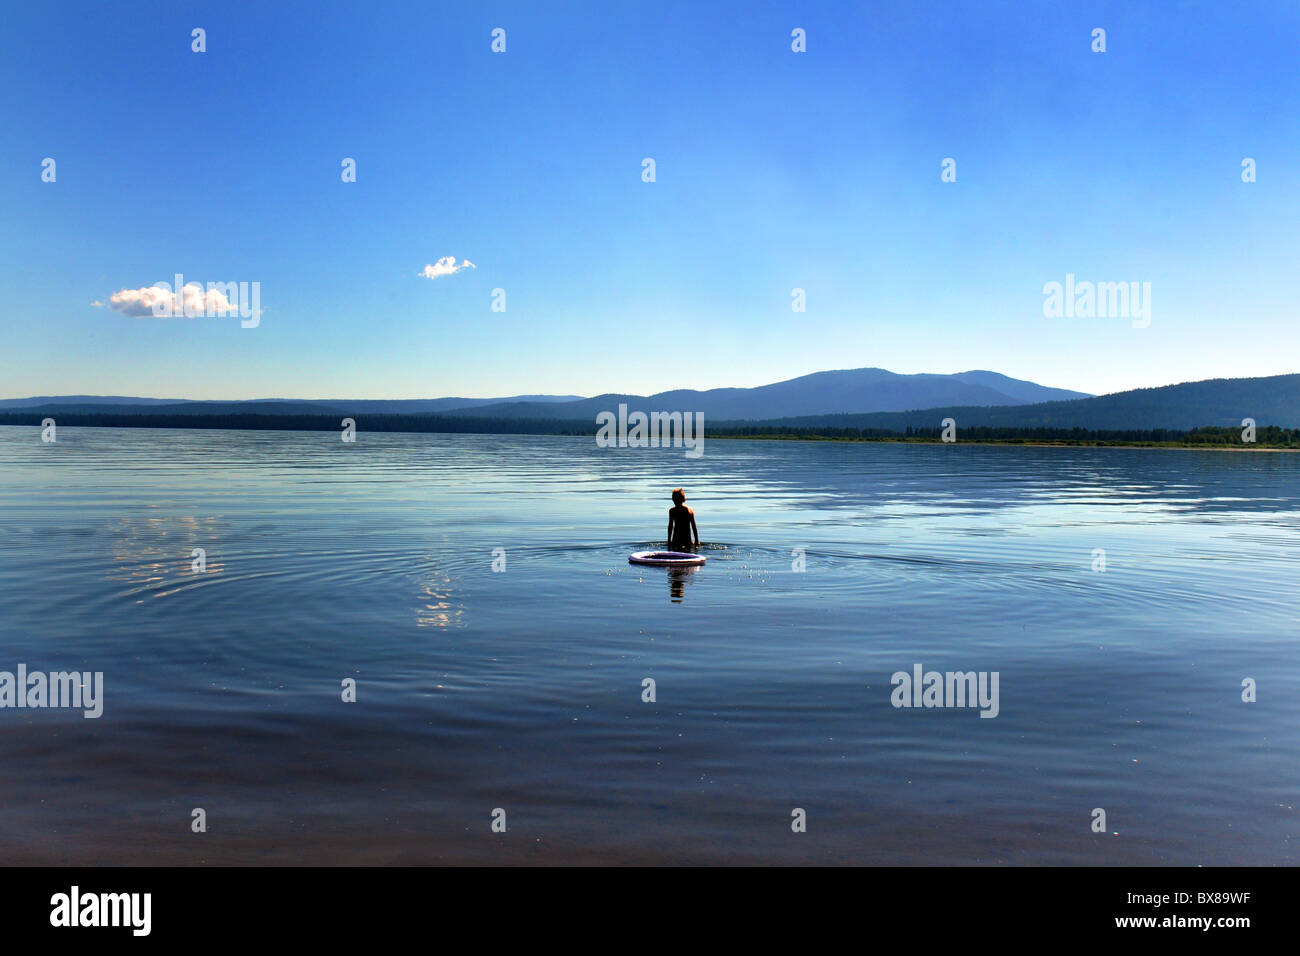 Un garçon baigne dans l'eau pour refroidir, Lake Almanor, California USA Banque D'Images